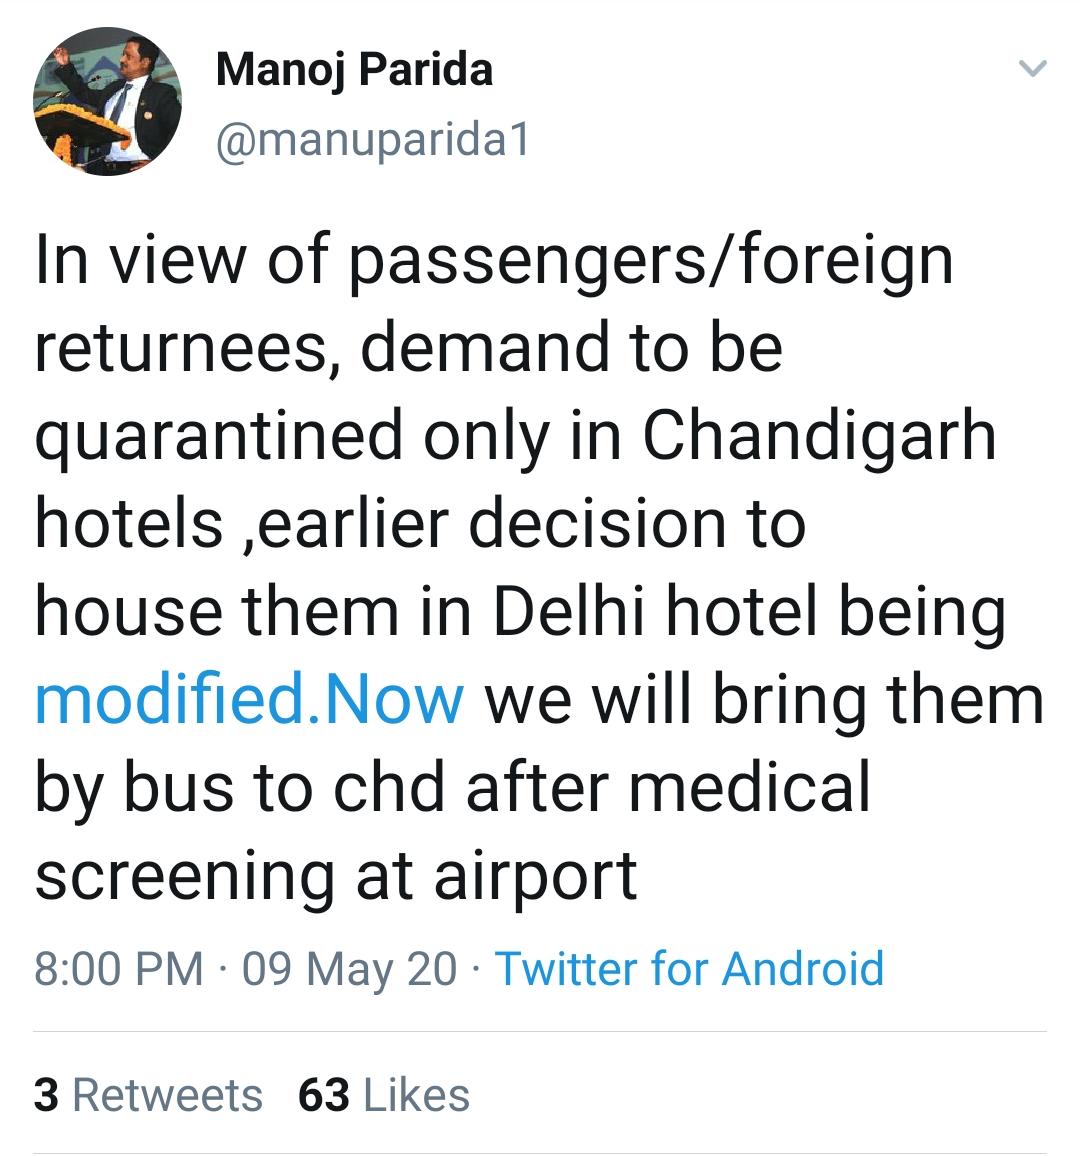 chandigarh flights start after lockdown